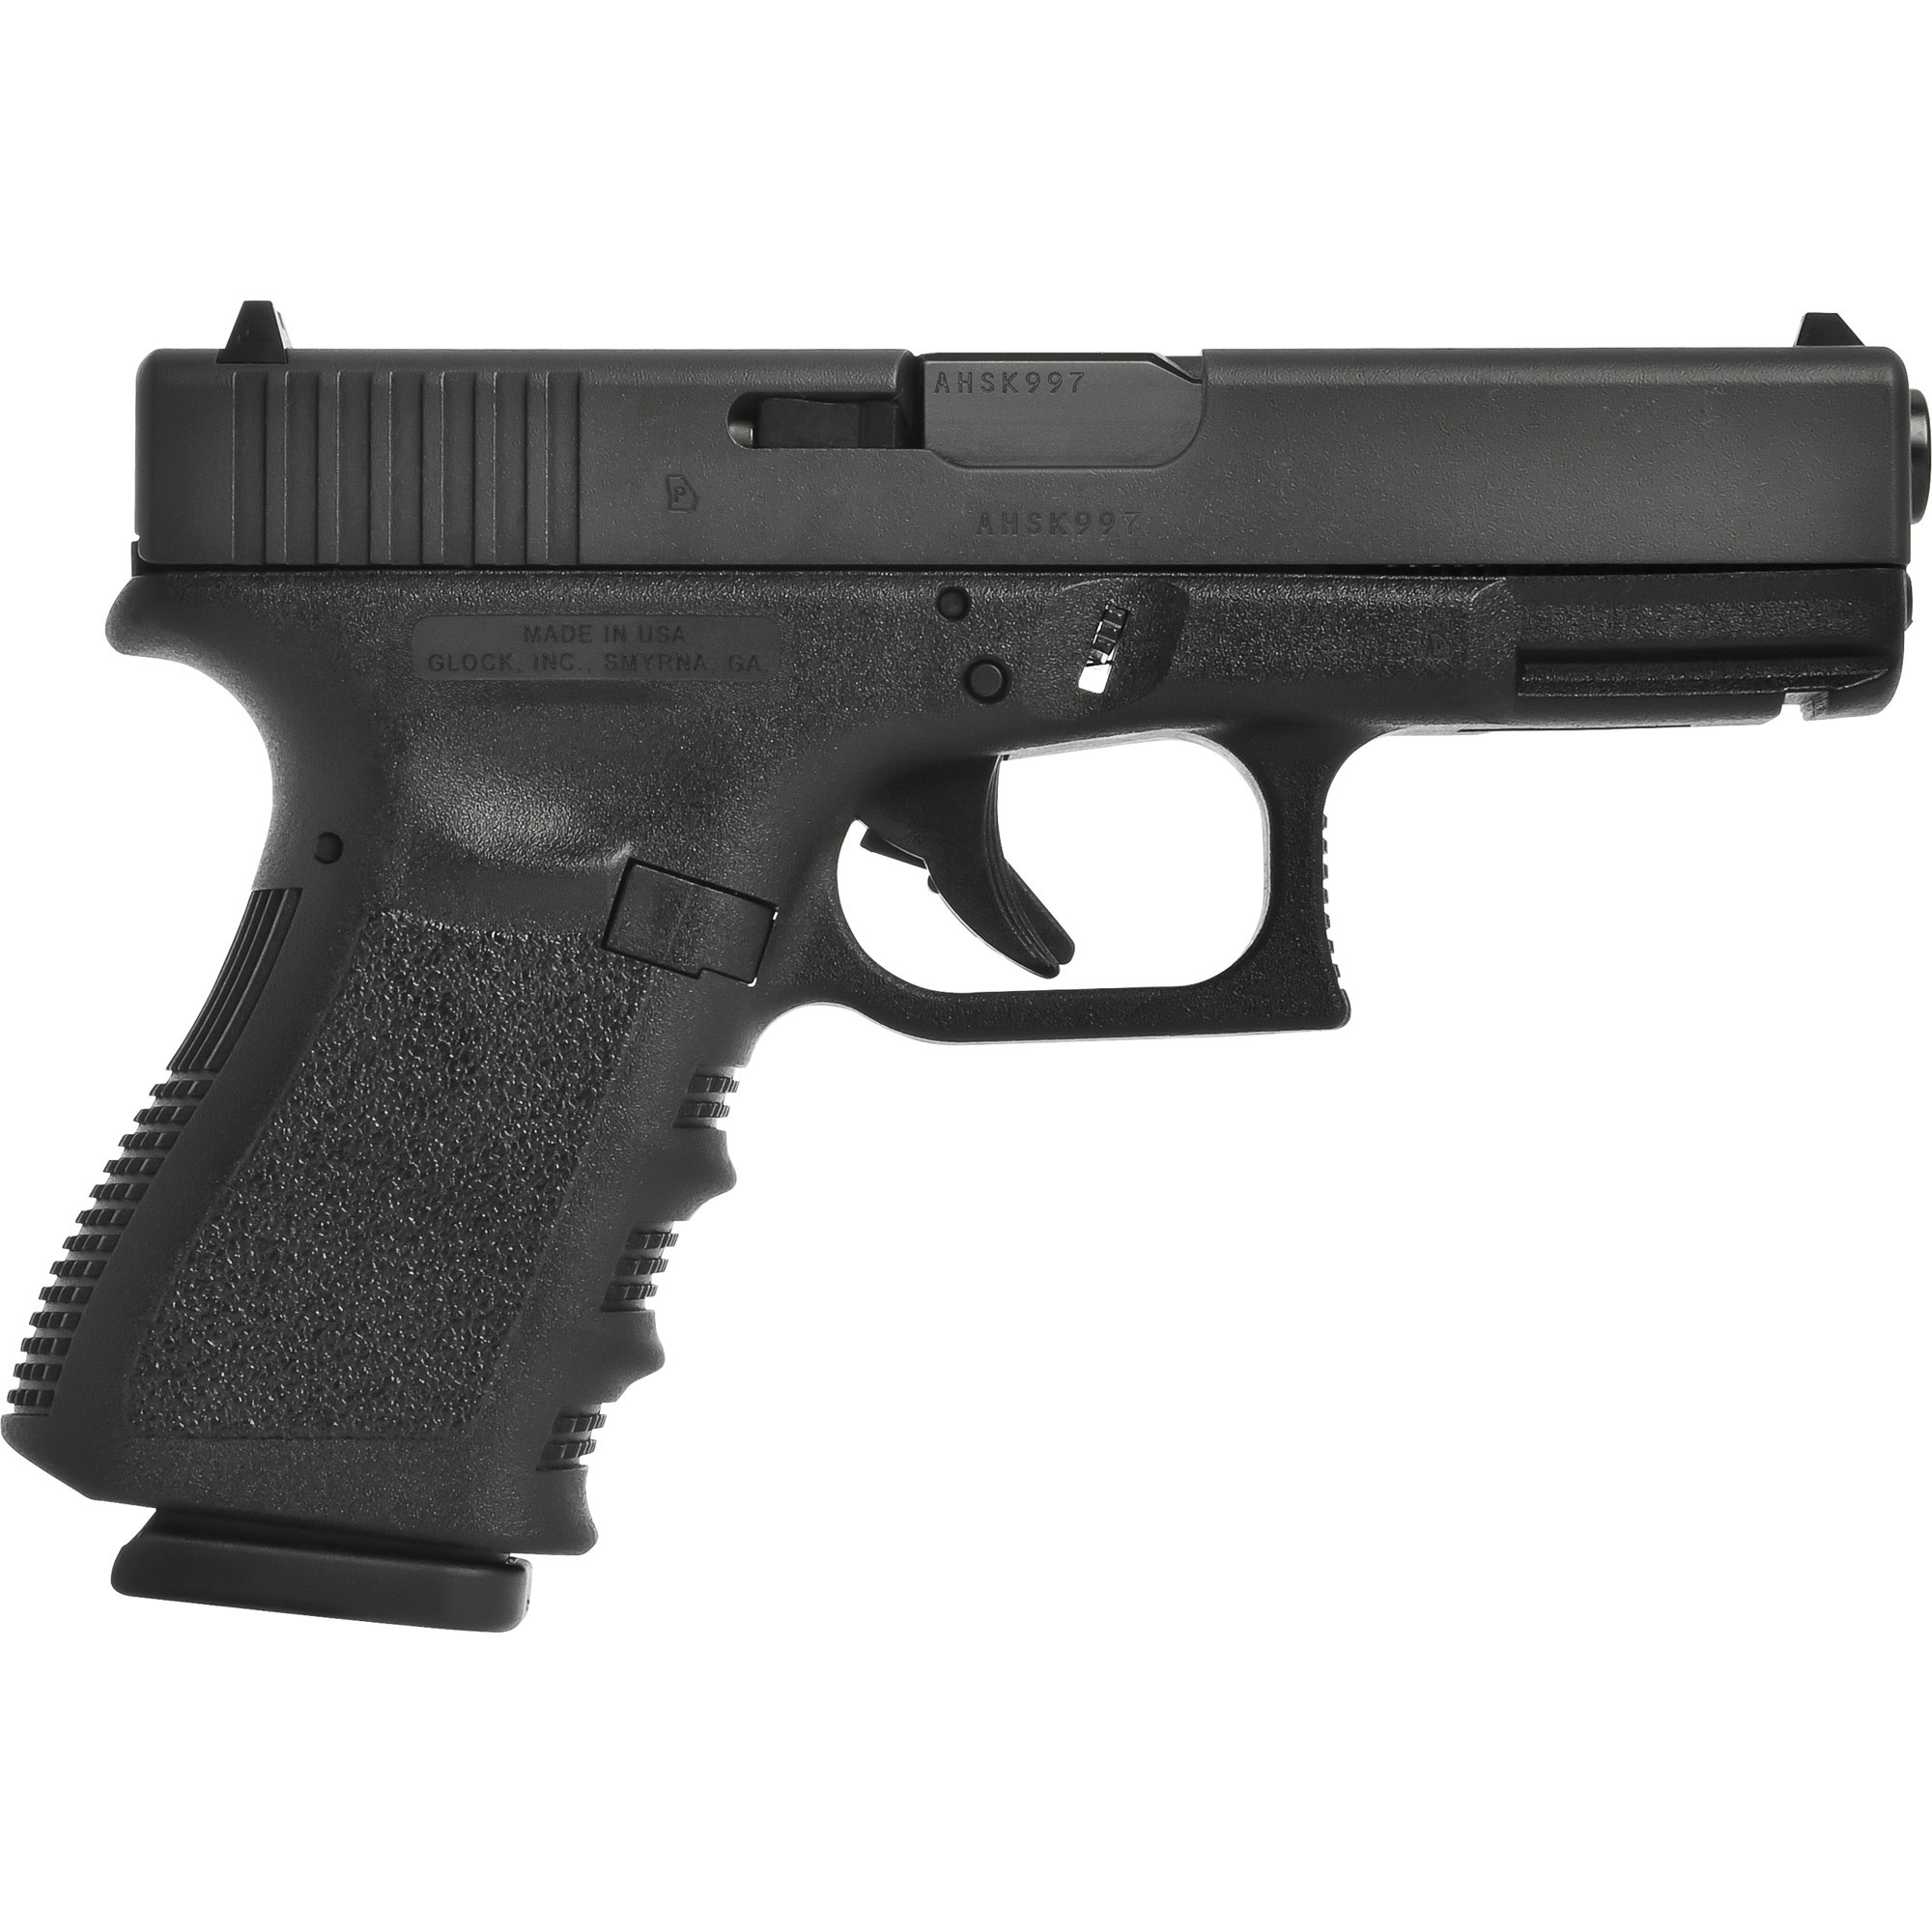 Glock G25 Gen3 380ACP 4.02" BLK/BLK (2)15 RND Pistol